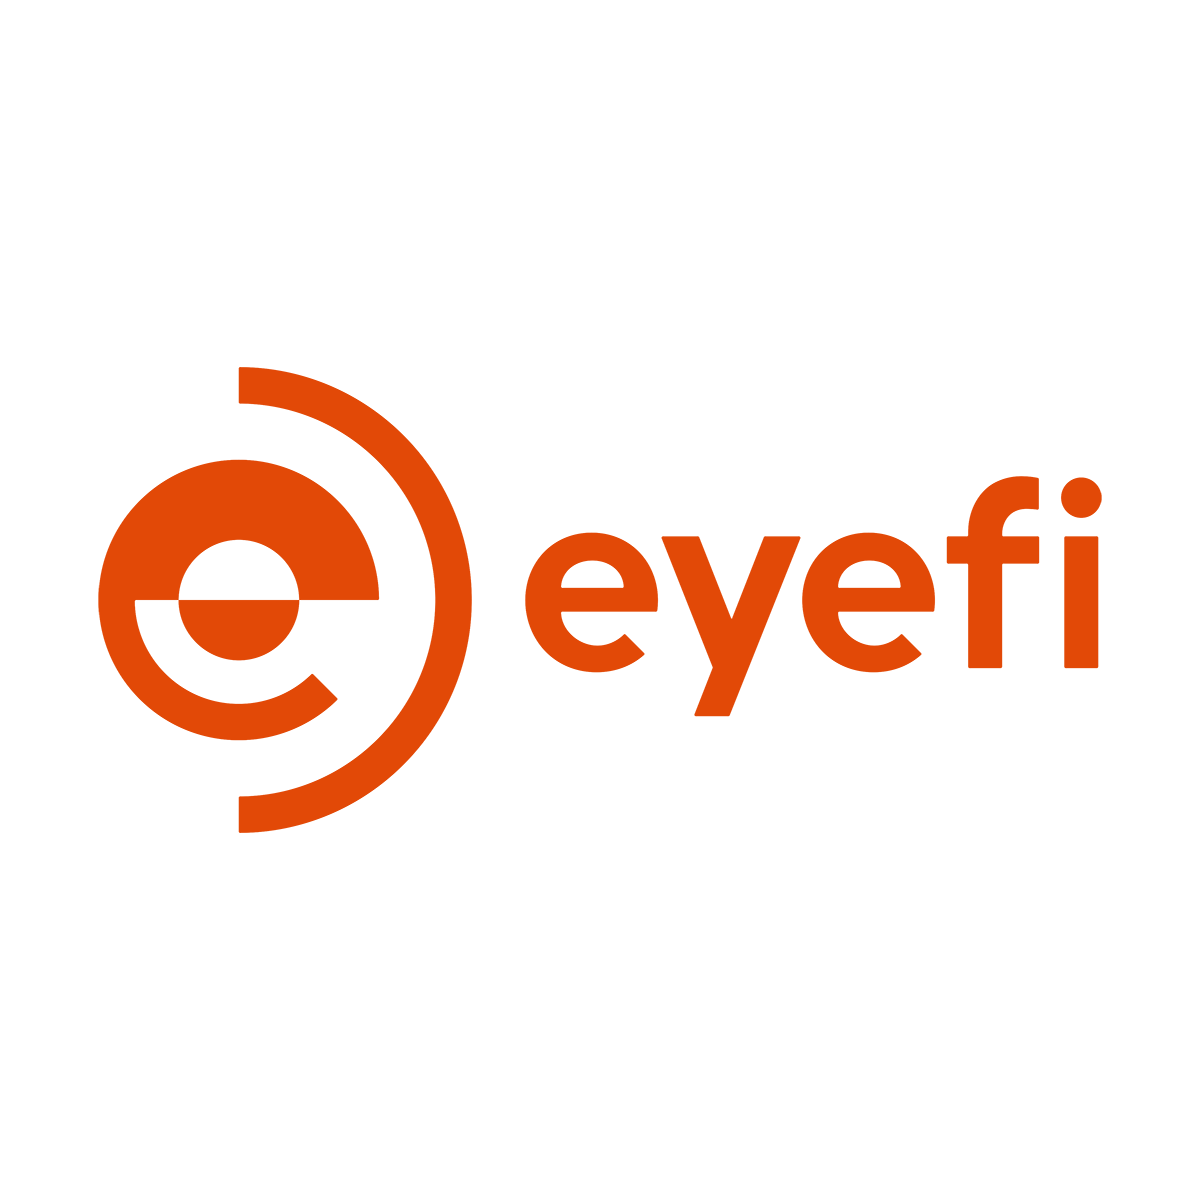 Eyefi